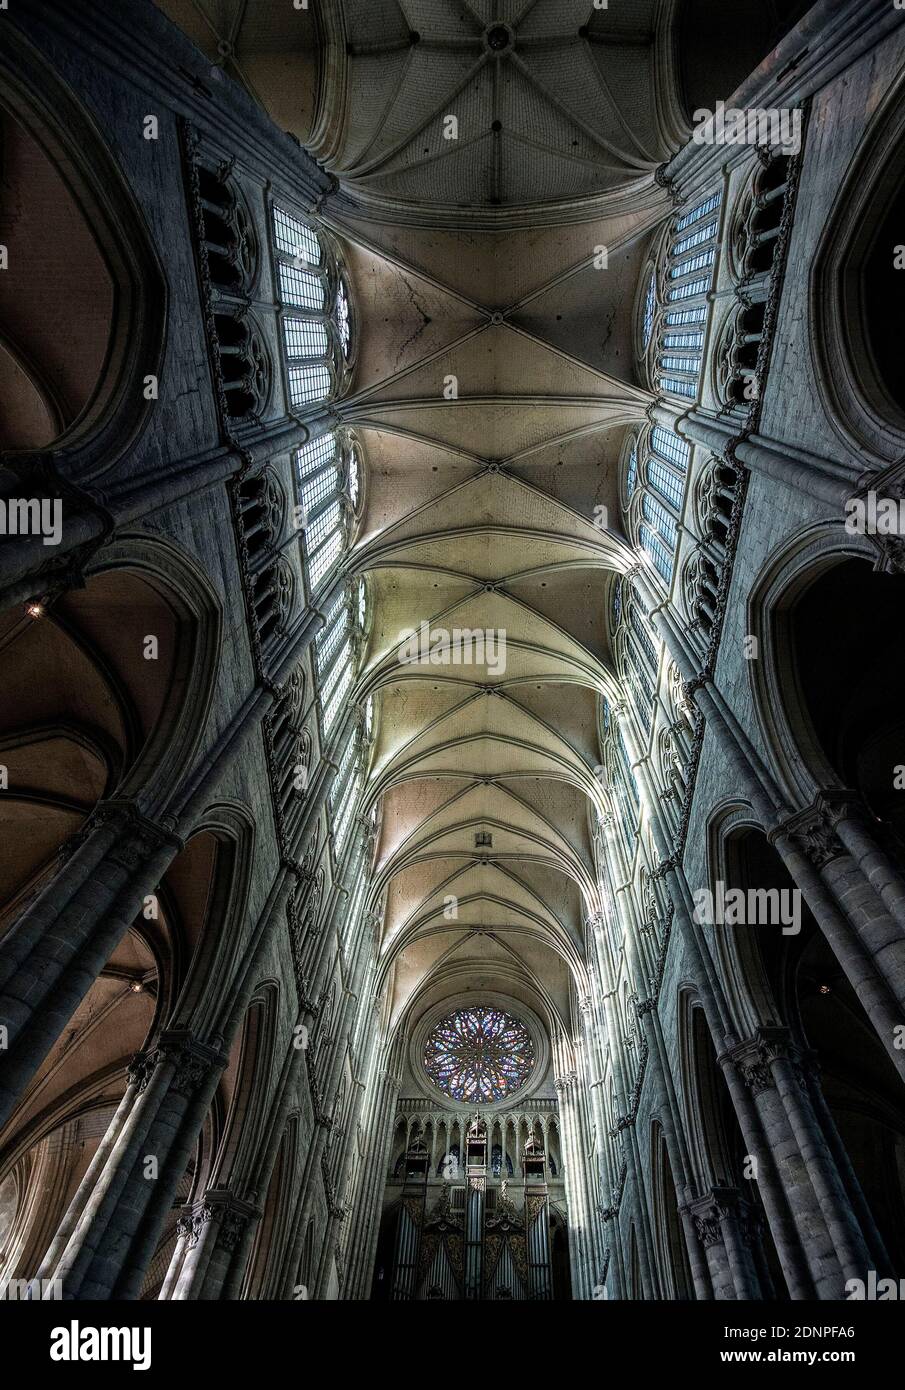 Amiens (Nordfrankreich): Detail der Kathedrale Basilika unserer Lieben Frau von Amiens, gotische Kathedrale als UNESCO-Weltkulturerbe registriert. Langhaus VA Stockfoto